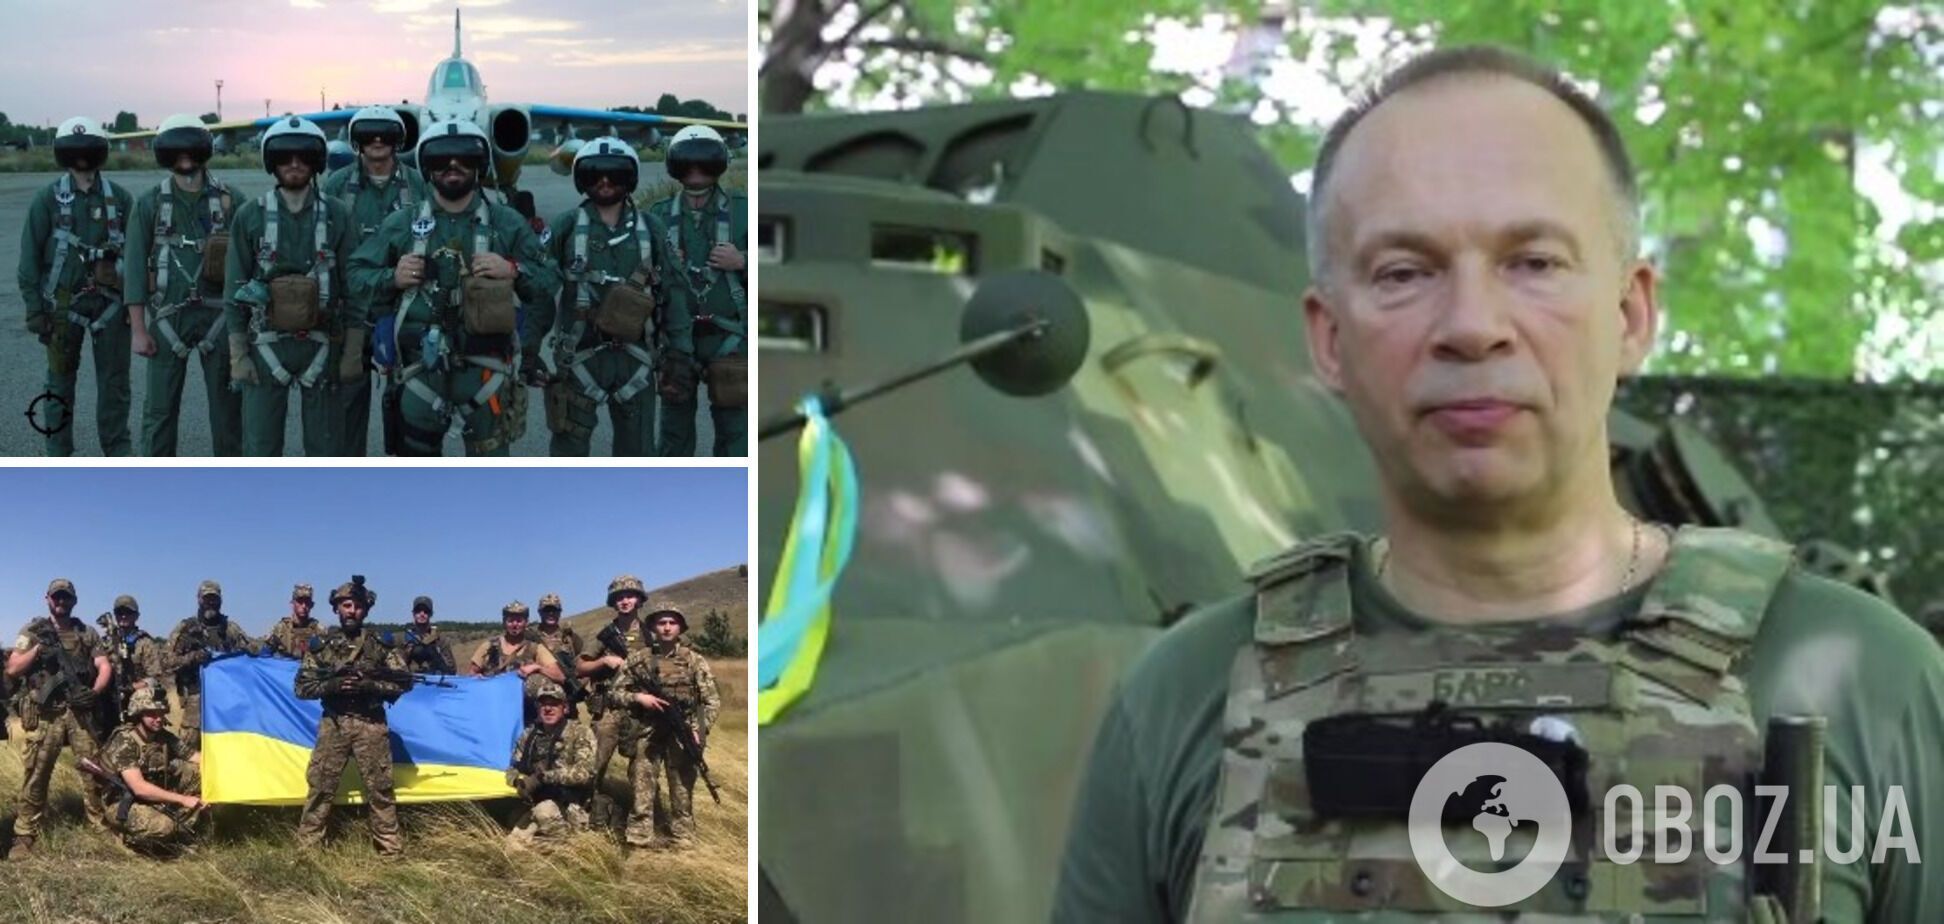 Олександр Сирський та воїни Сухопутних військ привітали Україну з Днем Незалежності